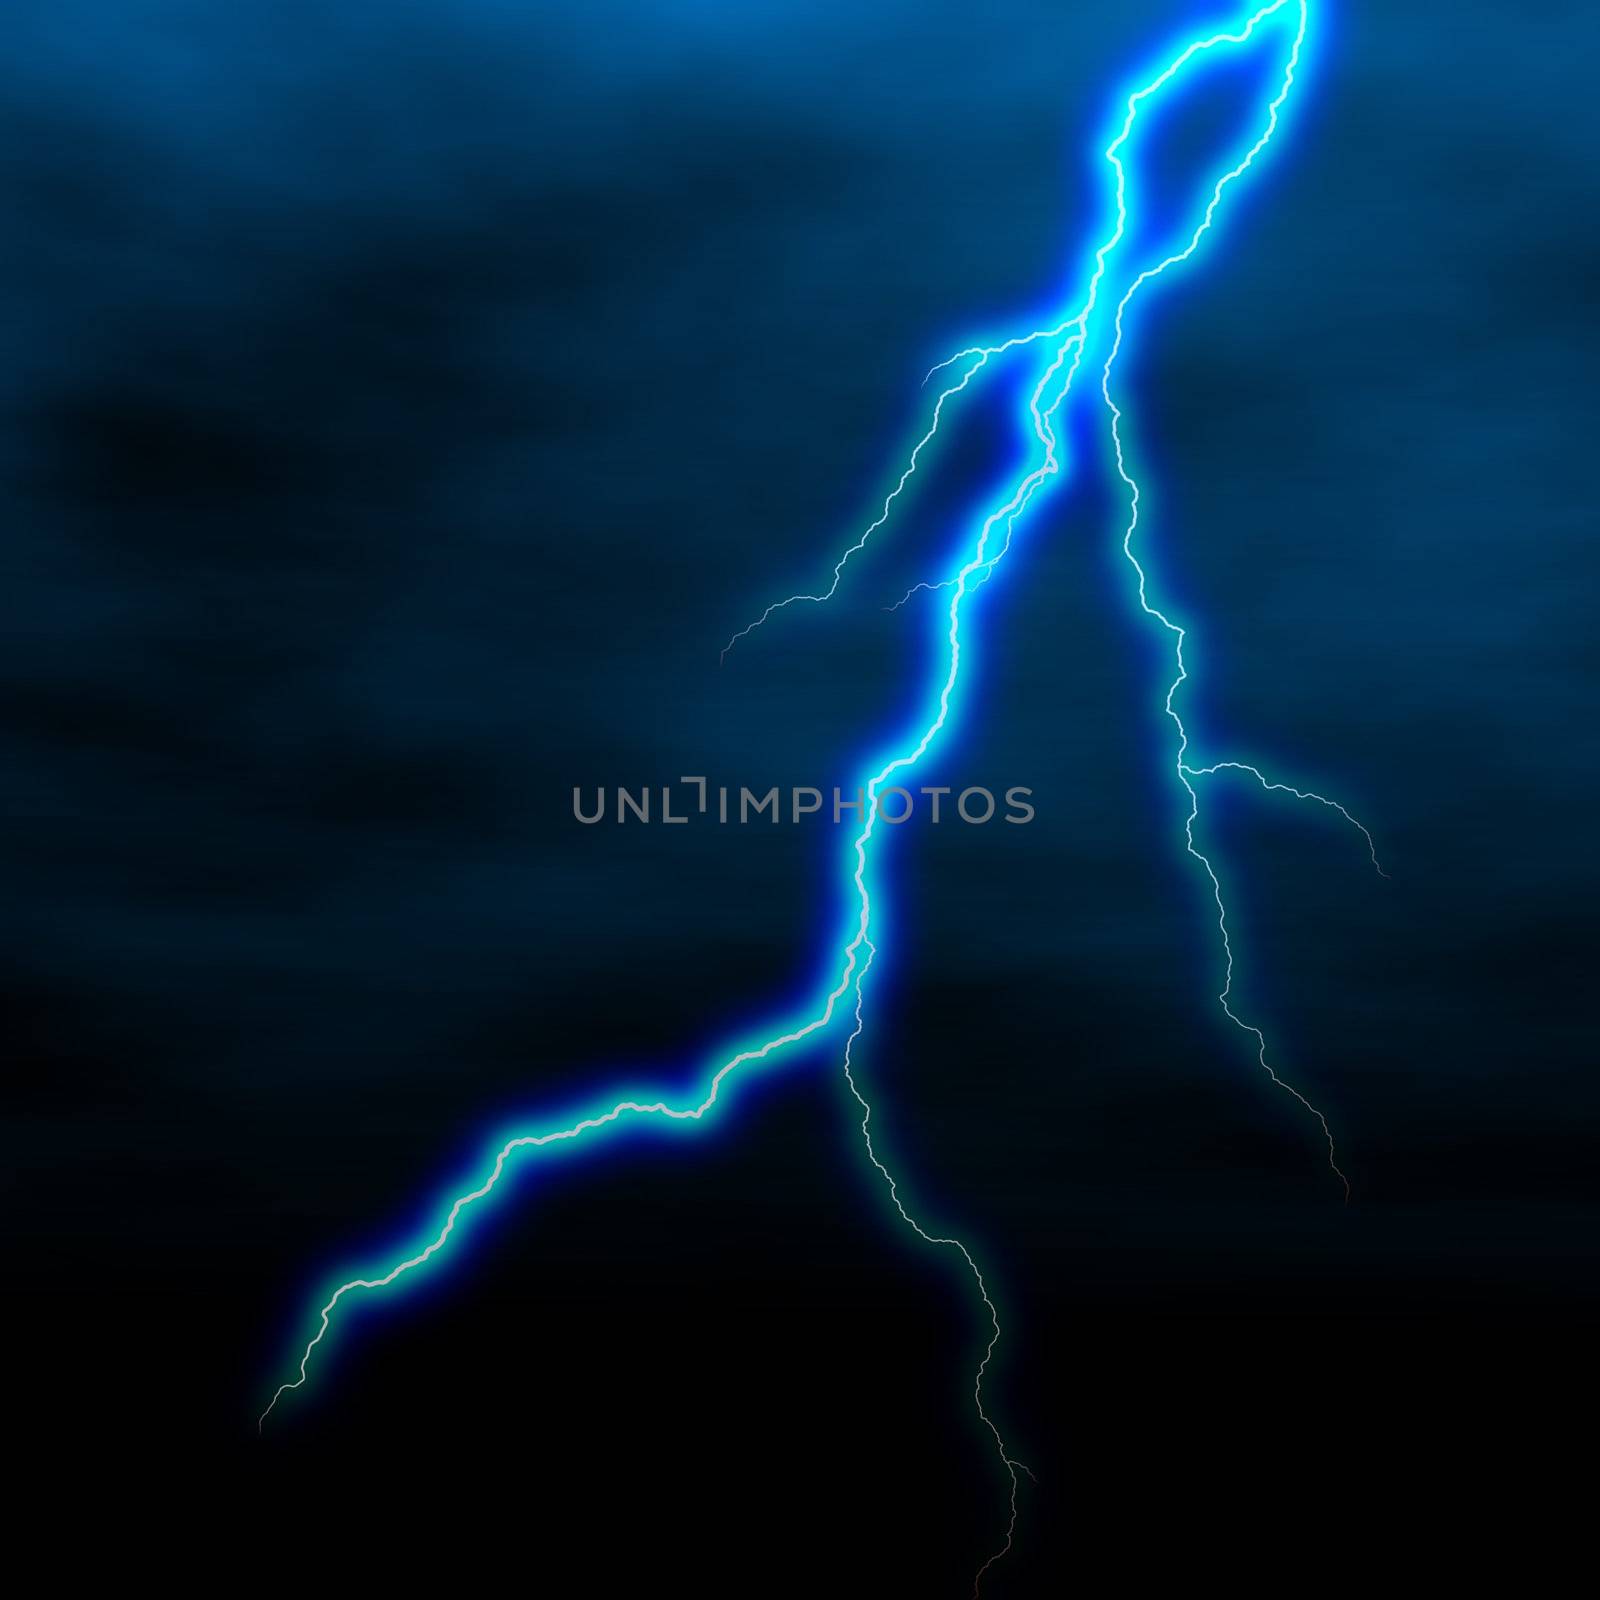 lightning by marinini